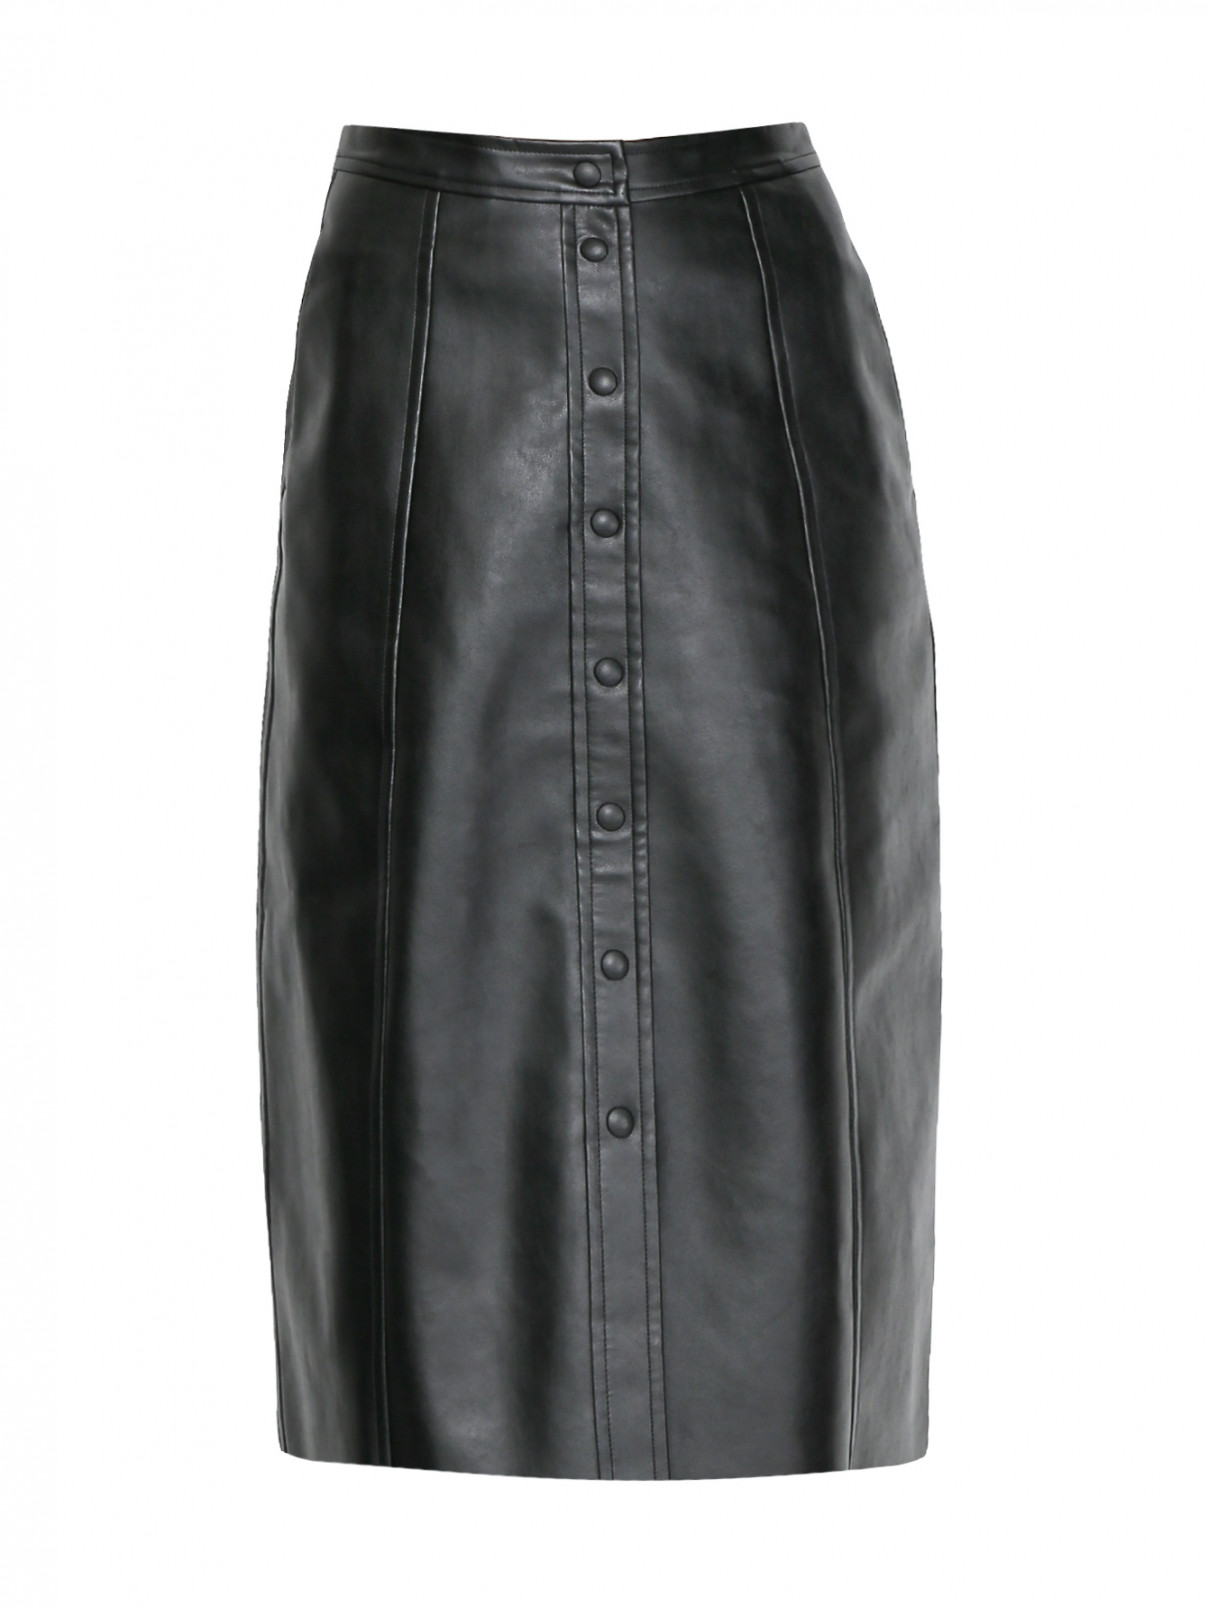 Юбка-миди из искусственной кожи с карманами Mo&Co  –  Общий вид  – Цвет:  Черный